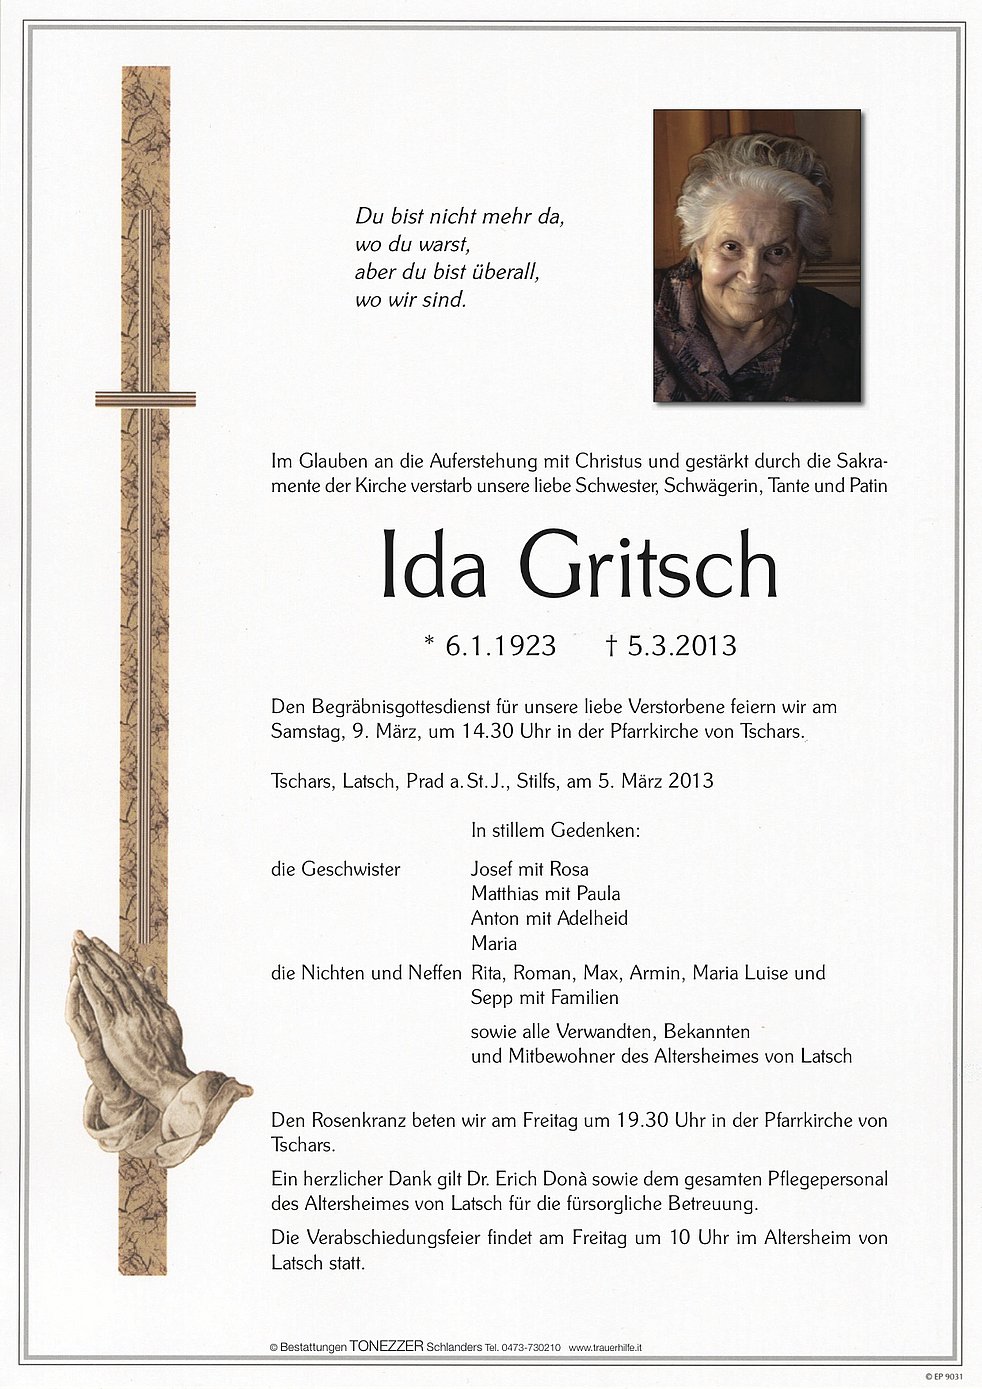 Ida Gritsch Aus Kastelbell Tschars Trauerhilfeit Das Südtiroler Gedenkportal 